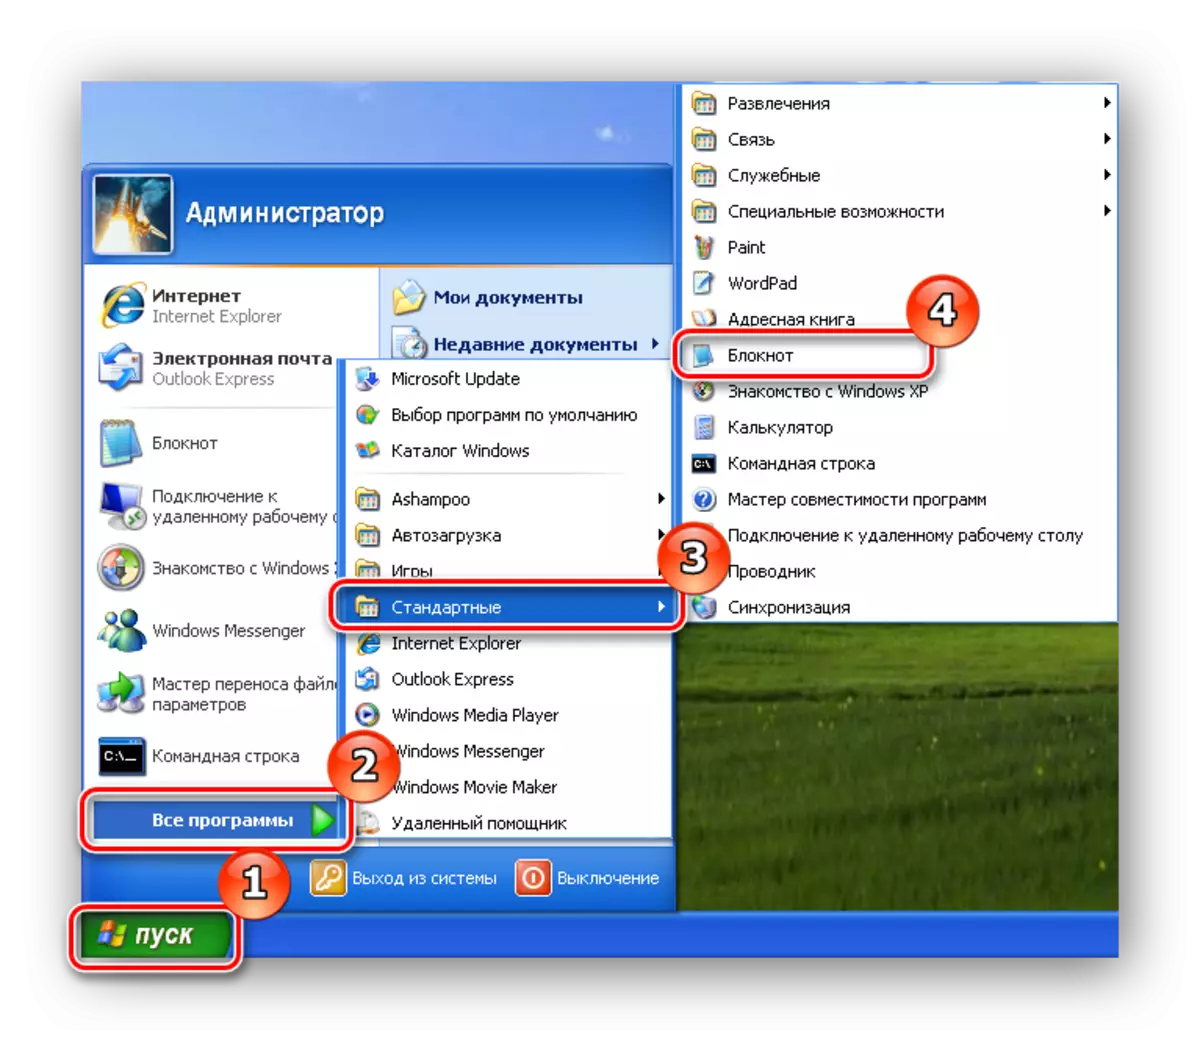 دفترچه یادداشت را در ویندوز XP باز کنید